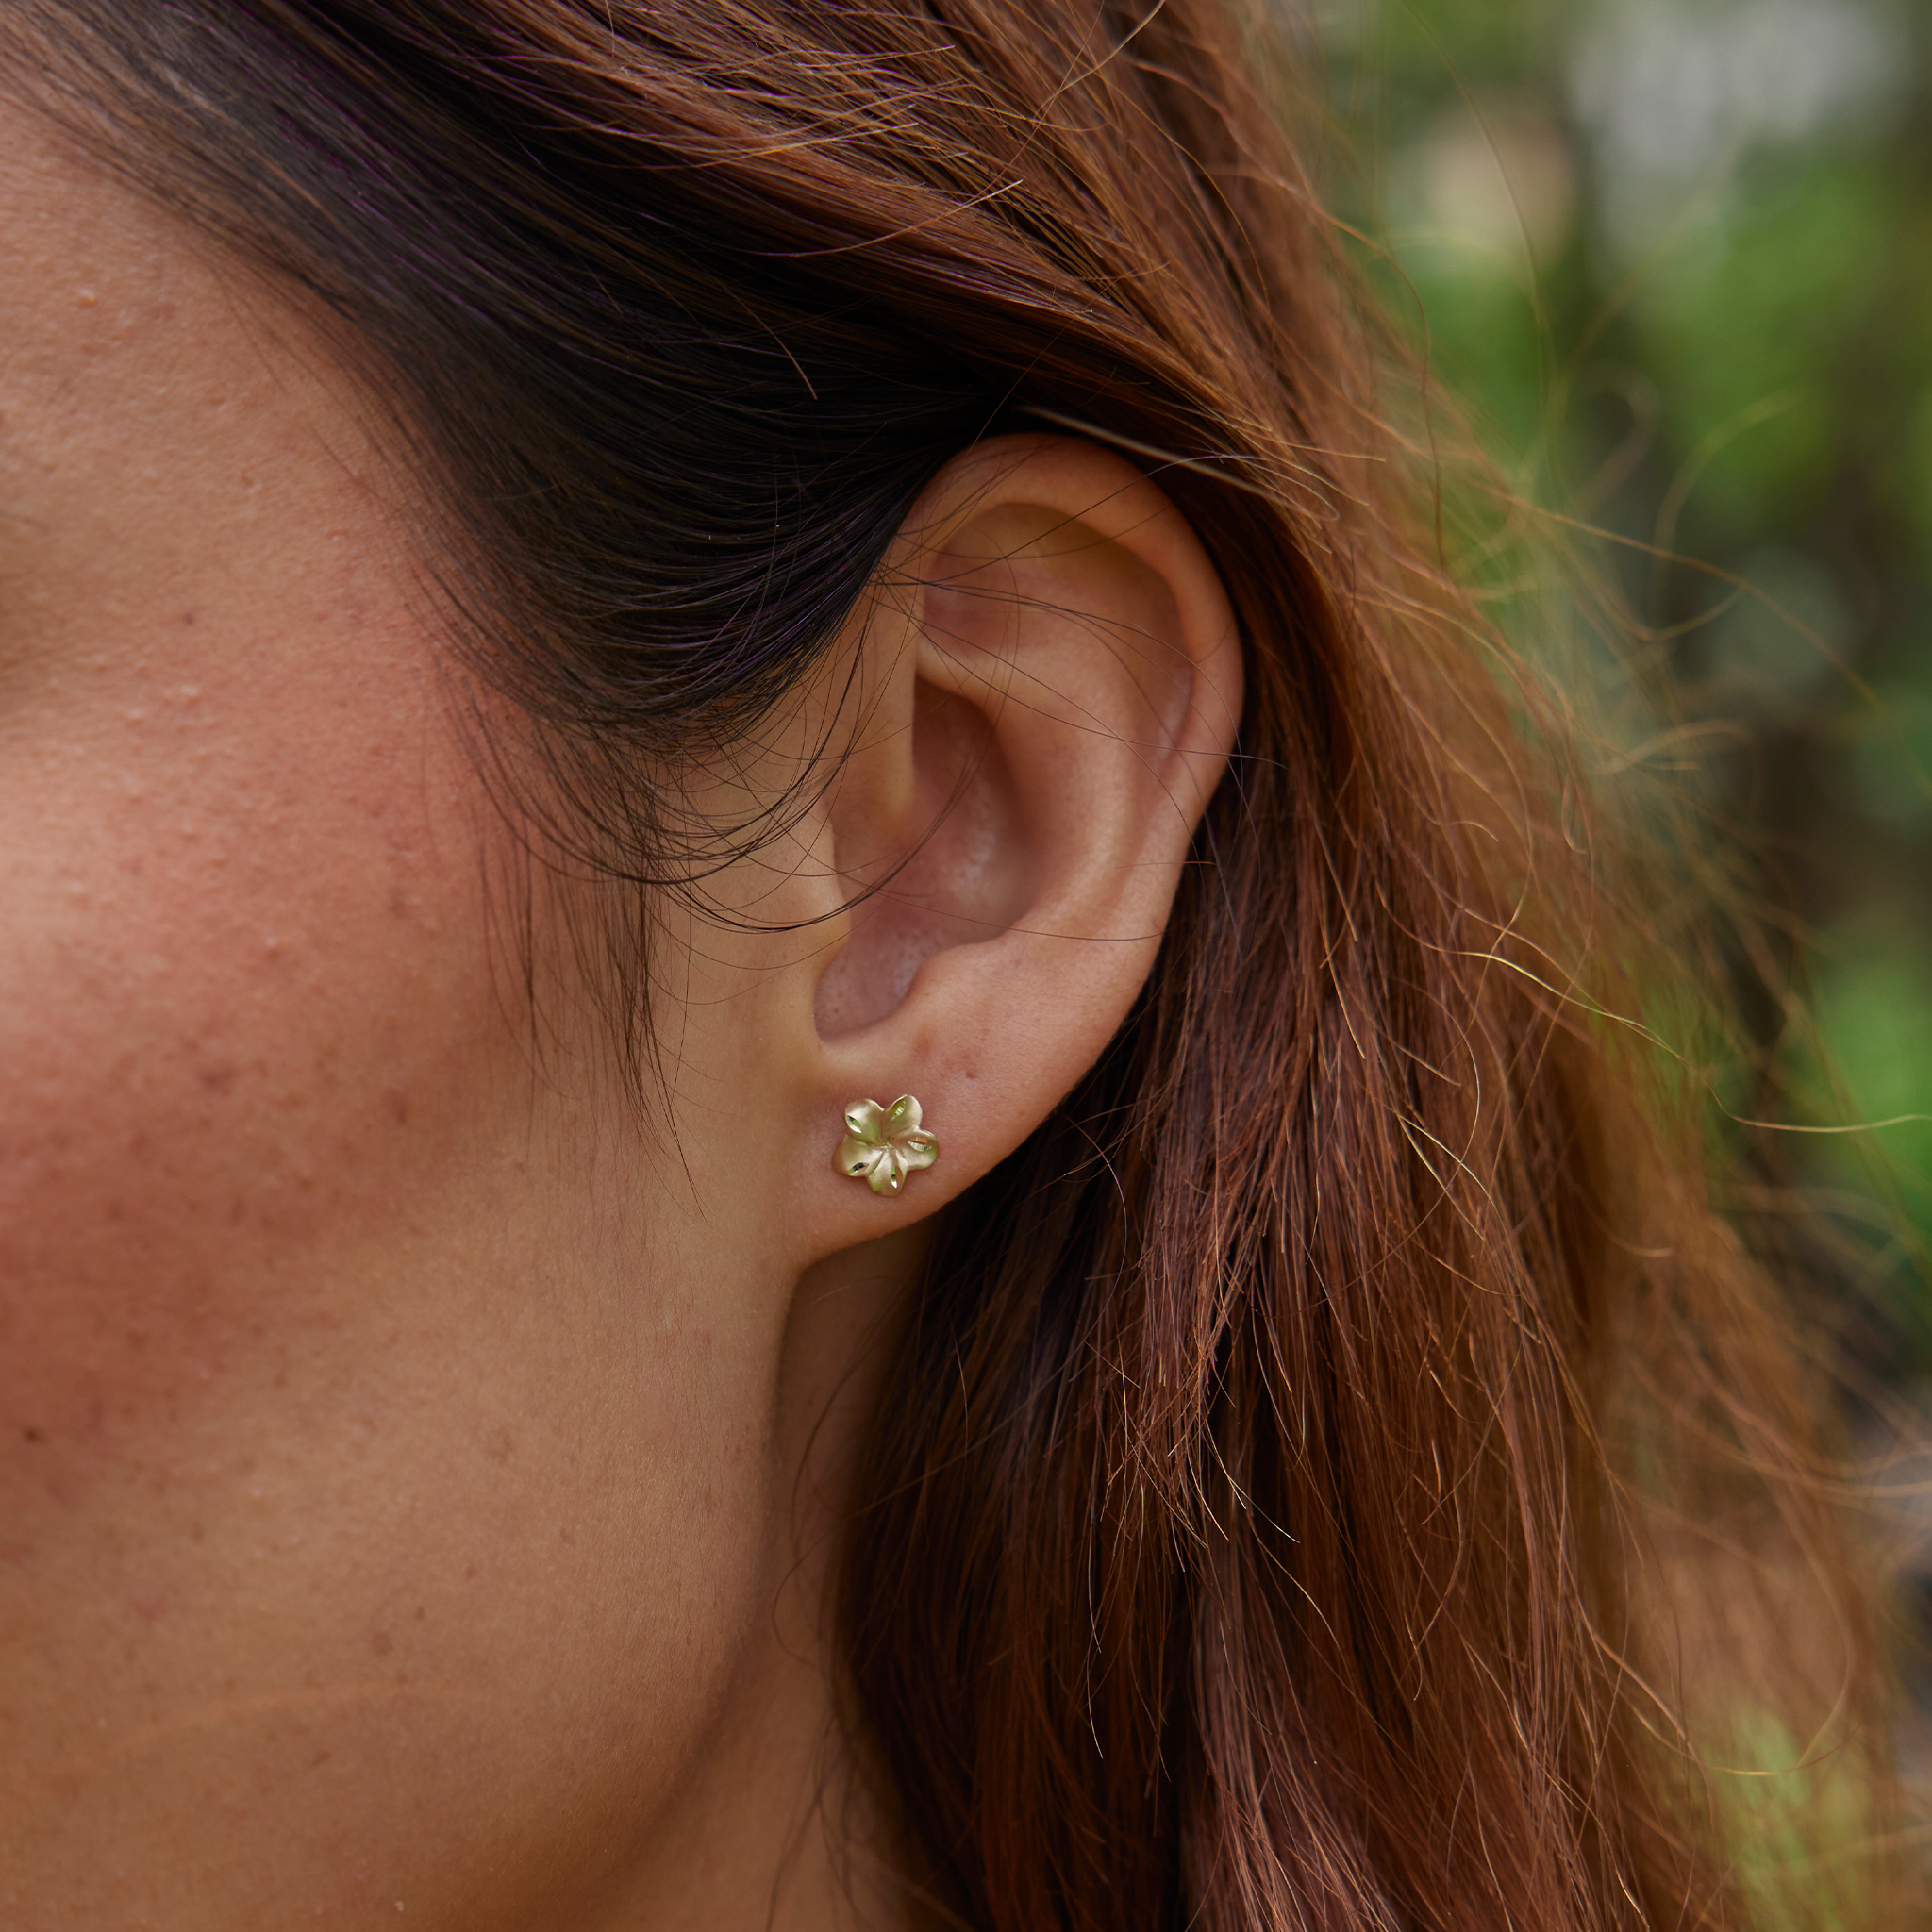 Plumeria Earrings in Gold - 7mm